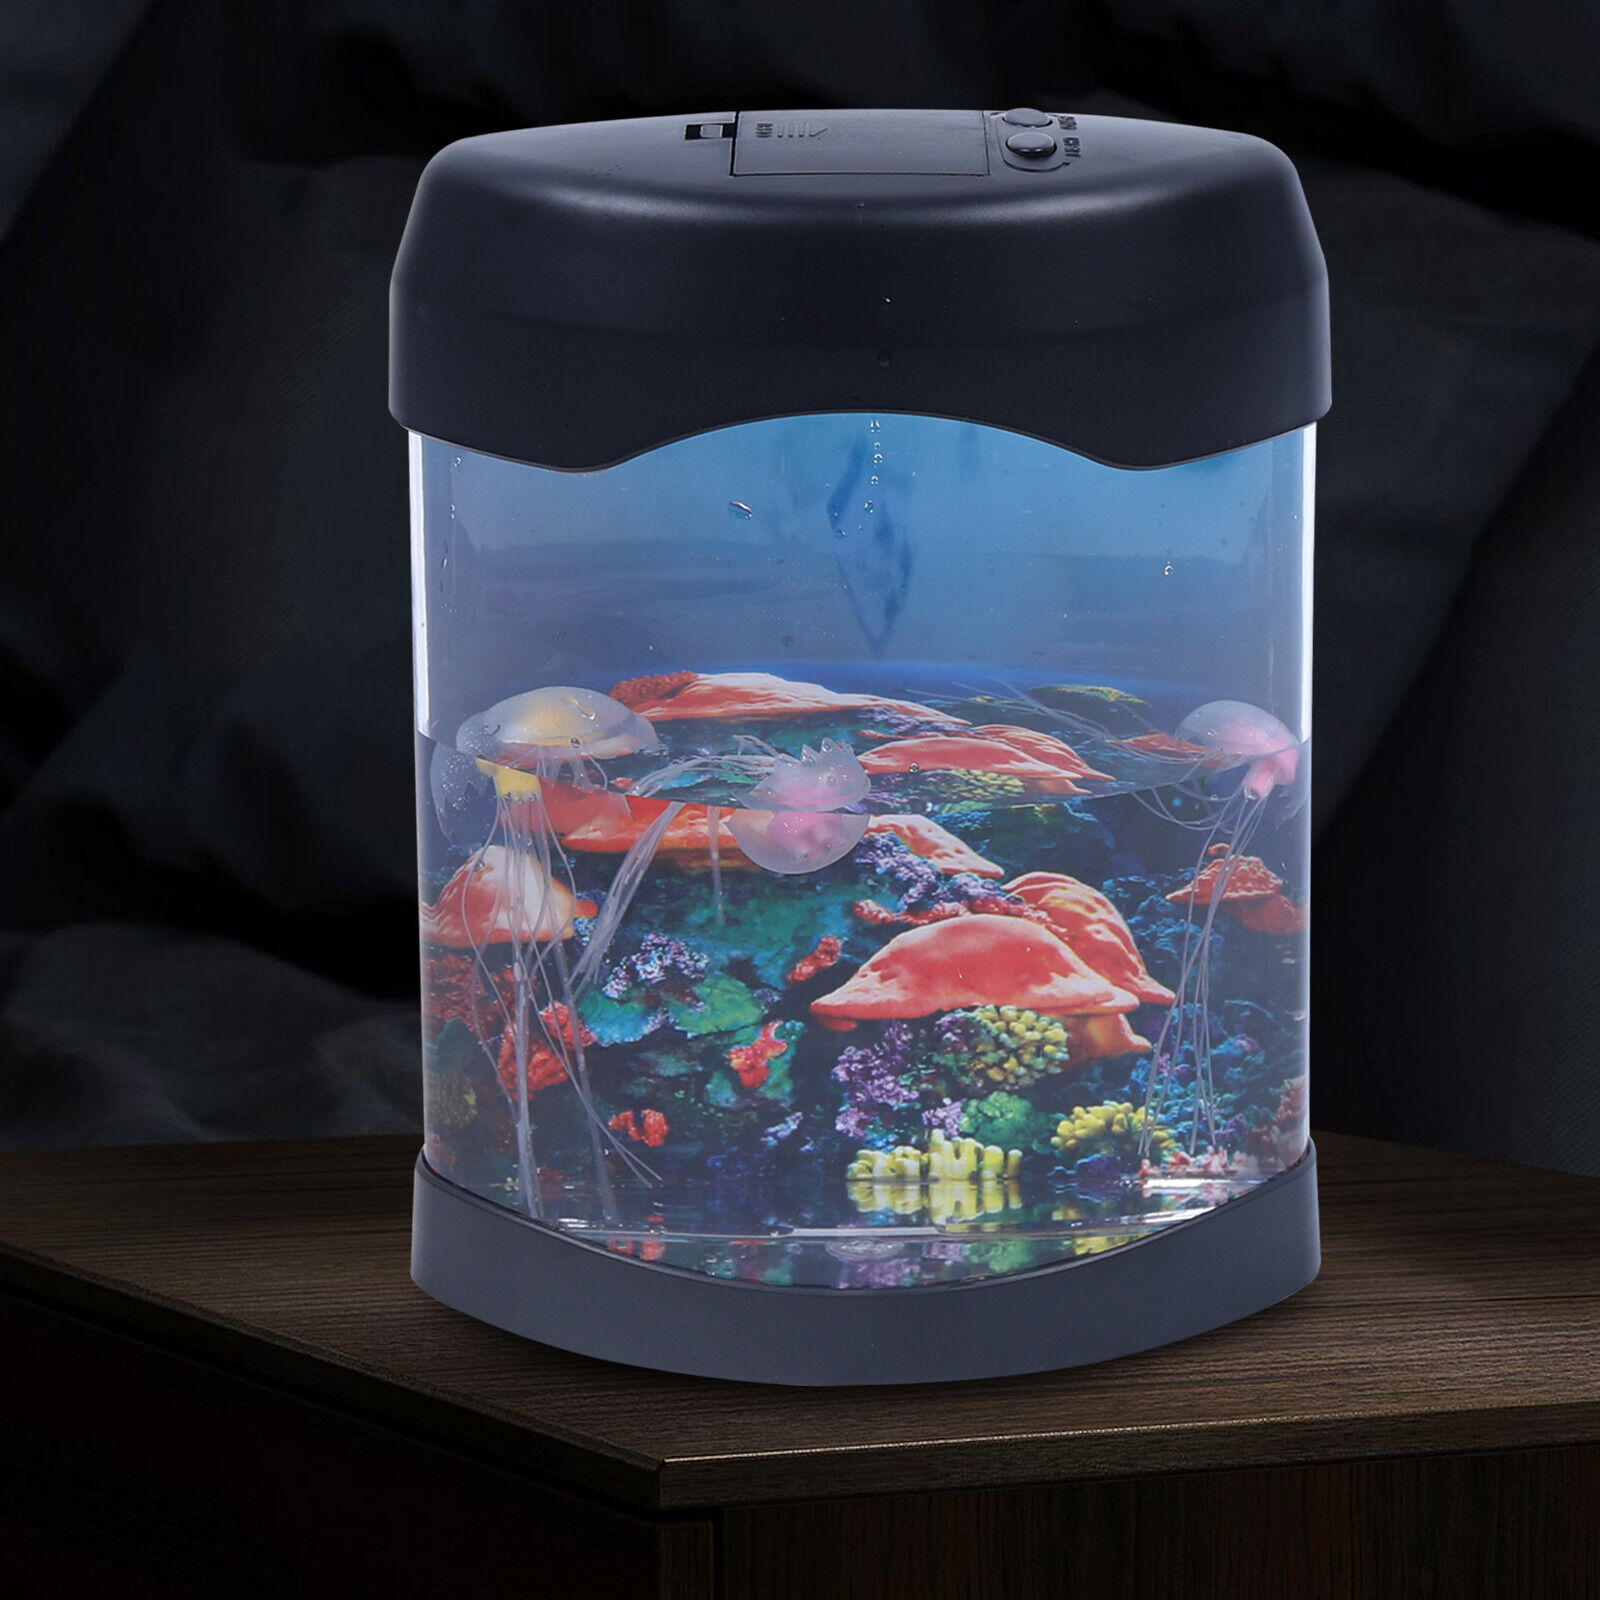 USB Jellyfish Aquarium Light Lamp Night Fish Tank Mood Lighting Desktop Decor US